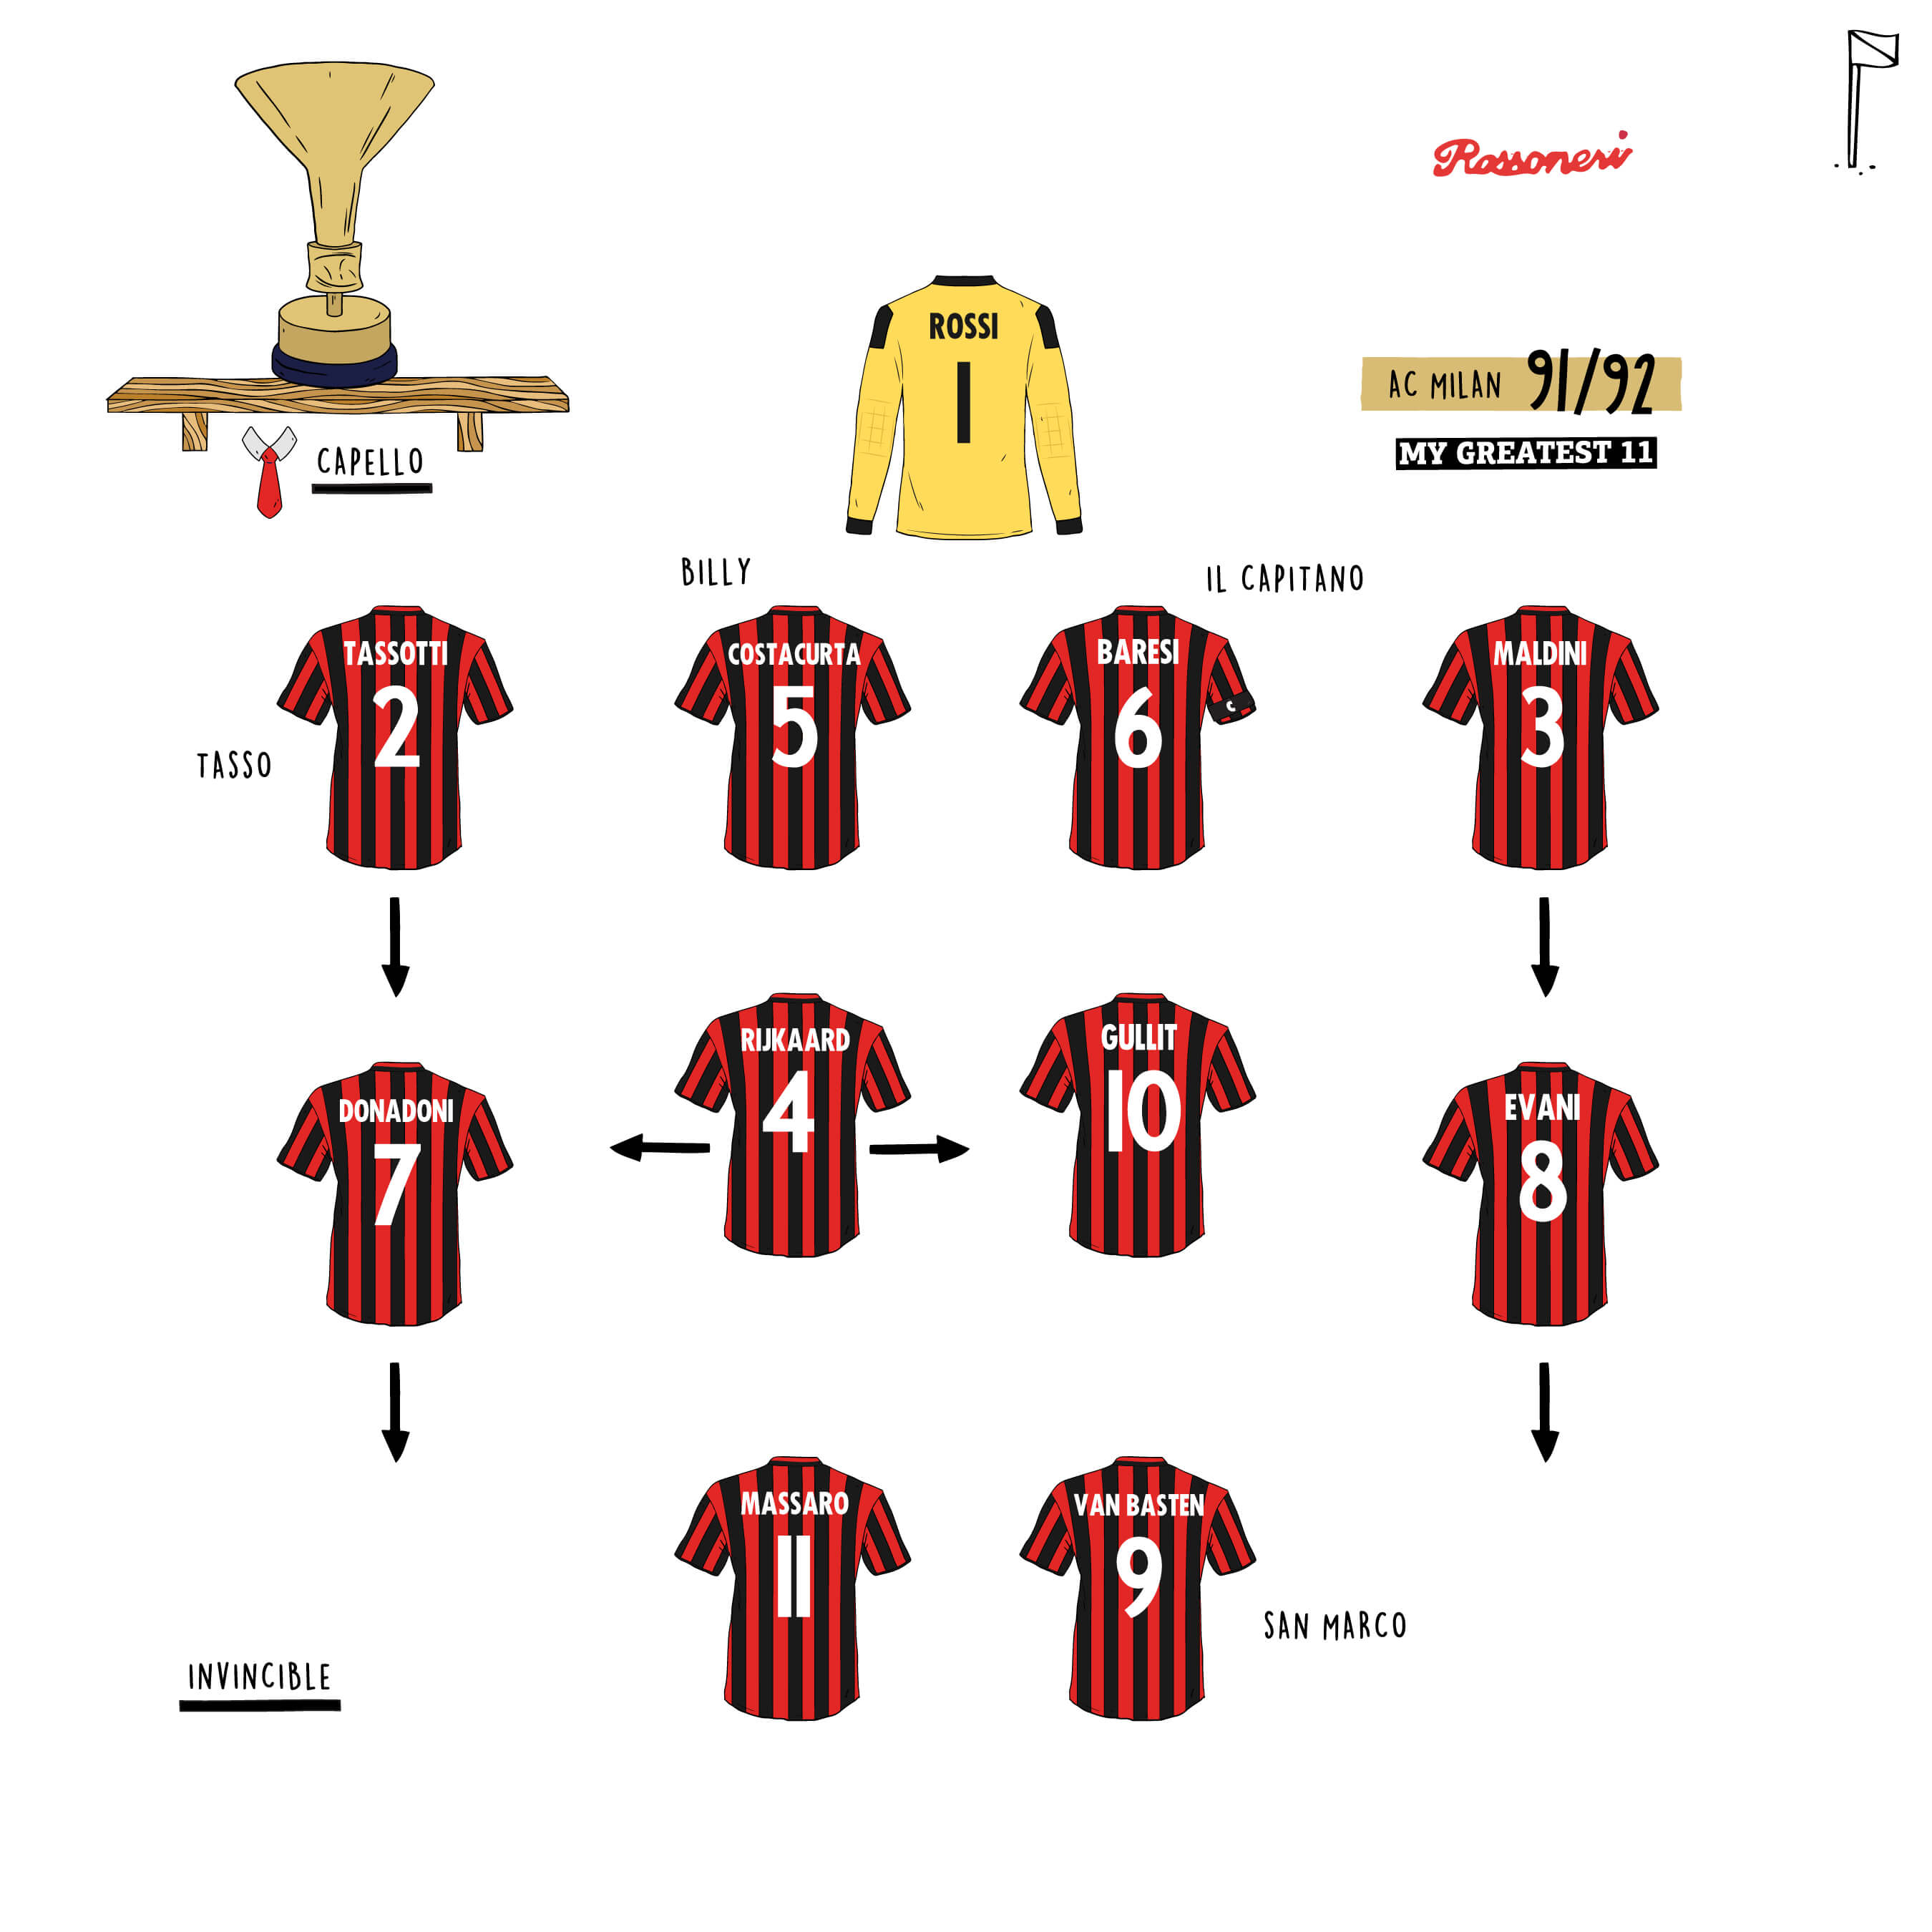 AC Milan 91/92 Team